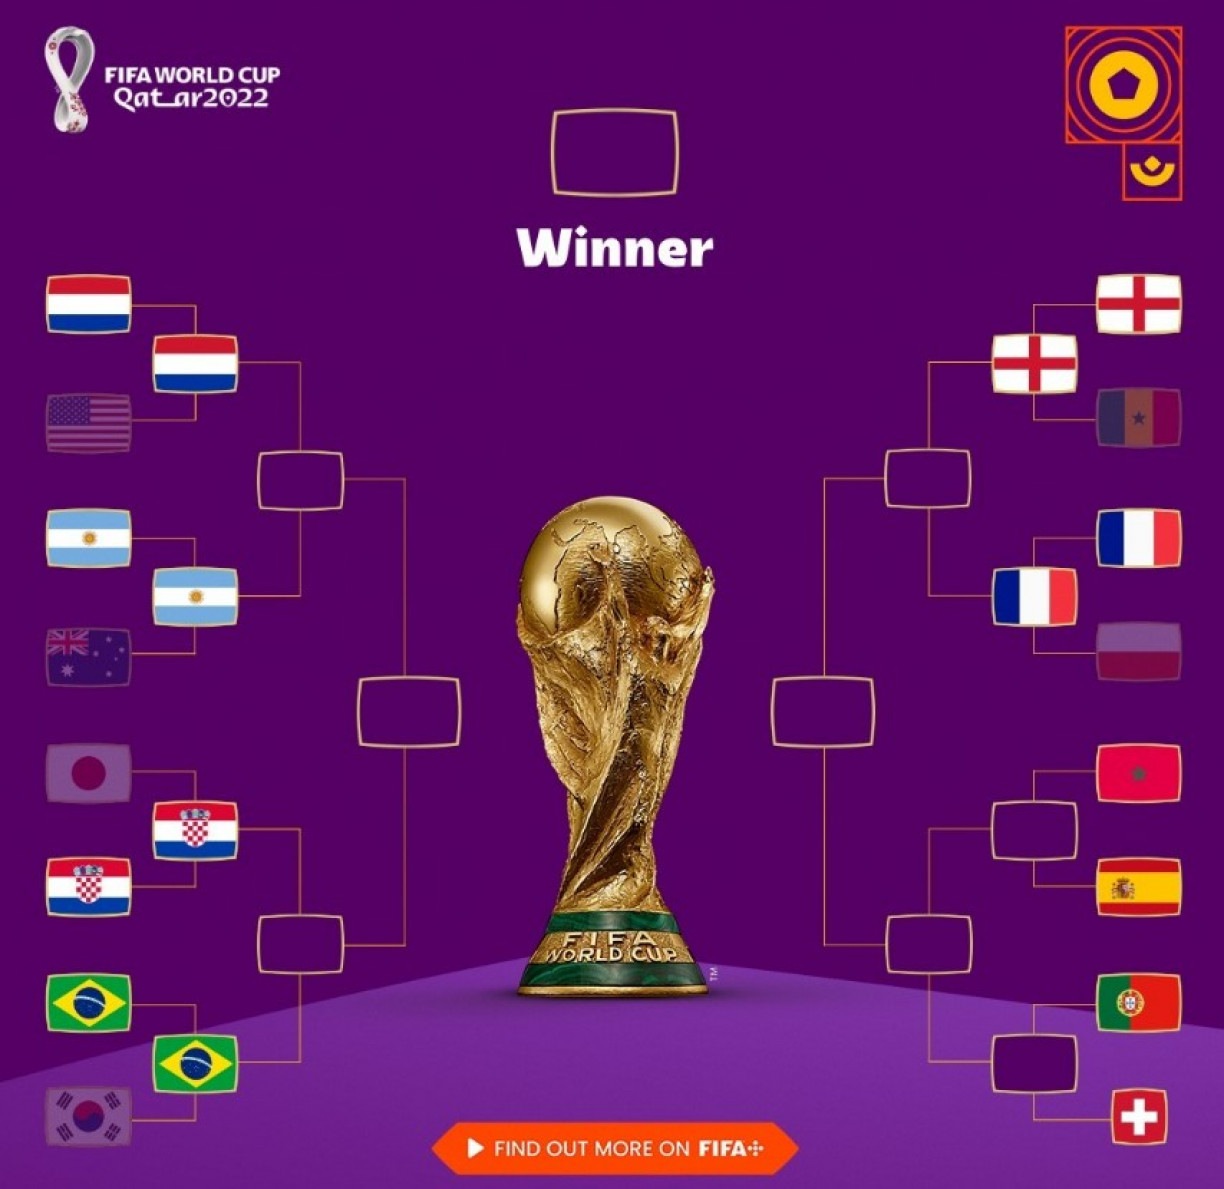 Copa 2022 - Tabela da Copa do Mundo FIFA 2022